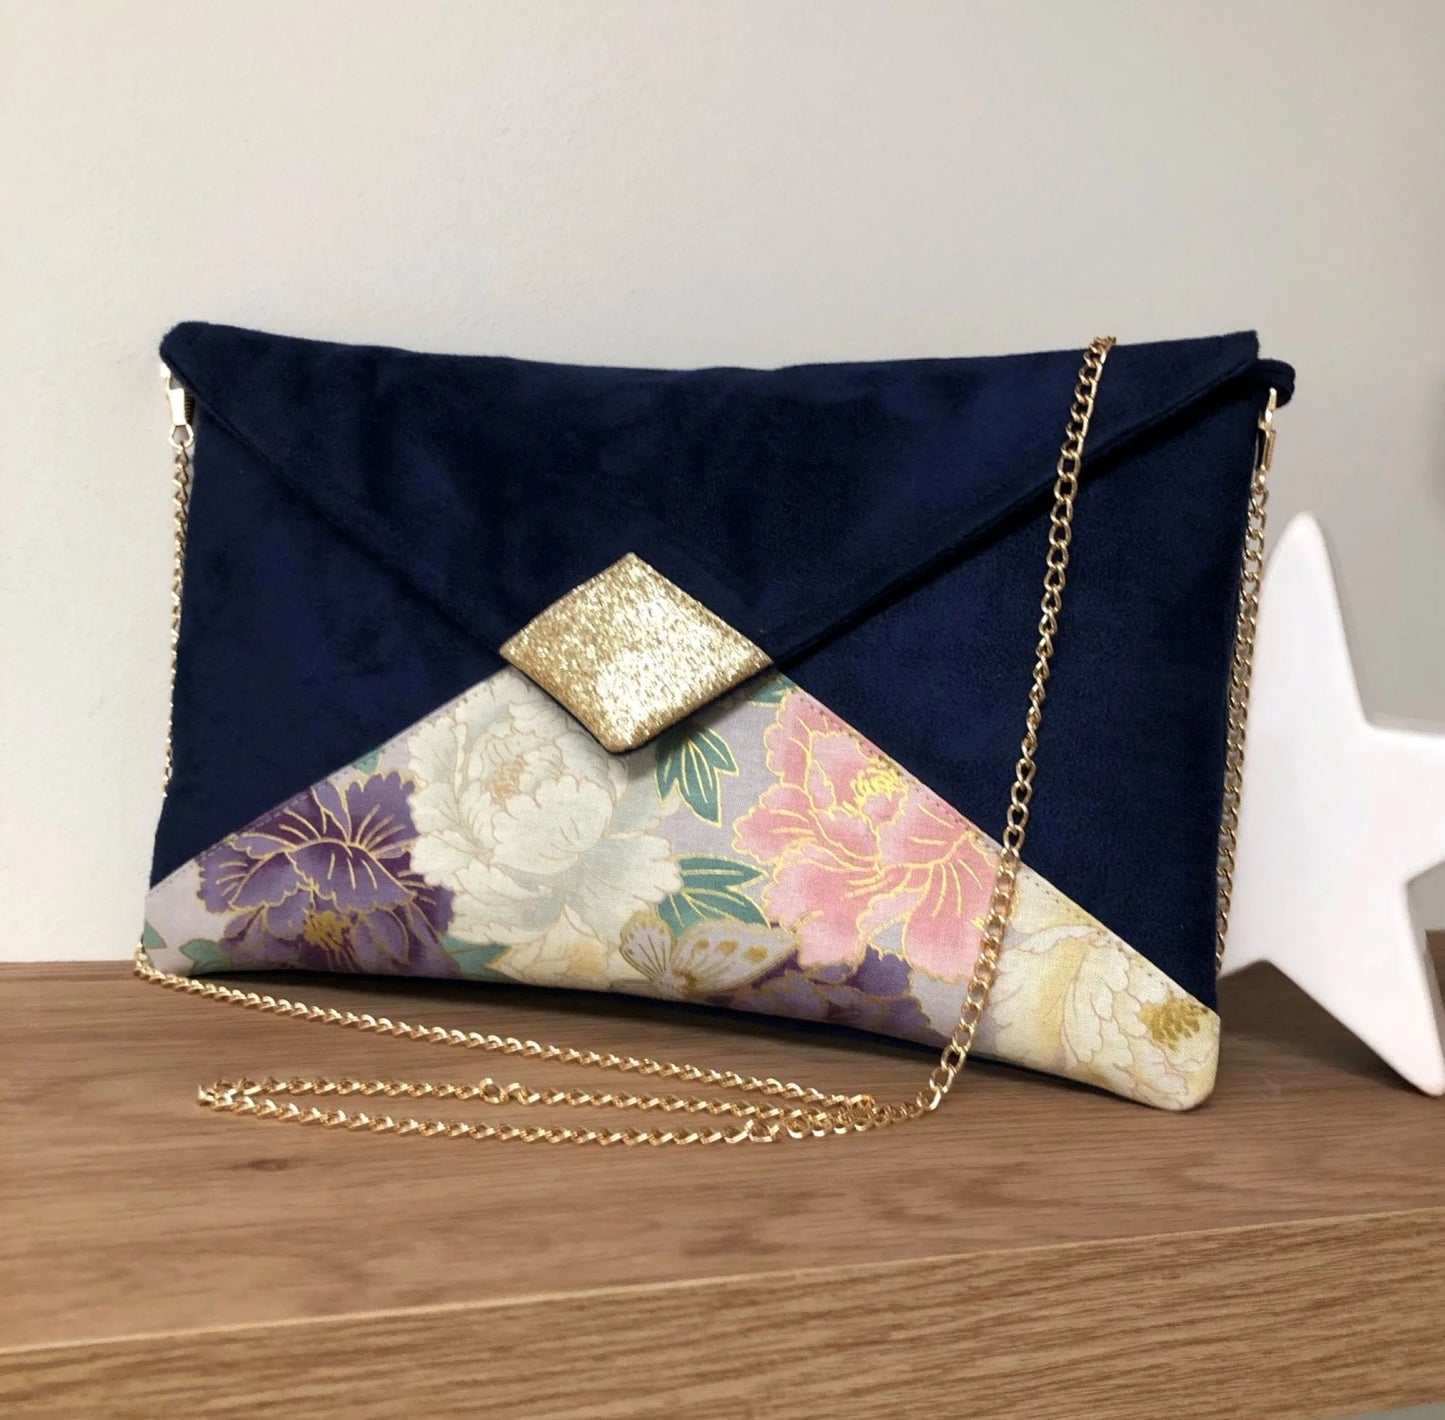 Le sac pochette Isa bleu marine en tissu japonais à fleurs mauve et rose et paillettes dorées, avec chainette amovible.